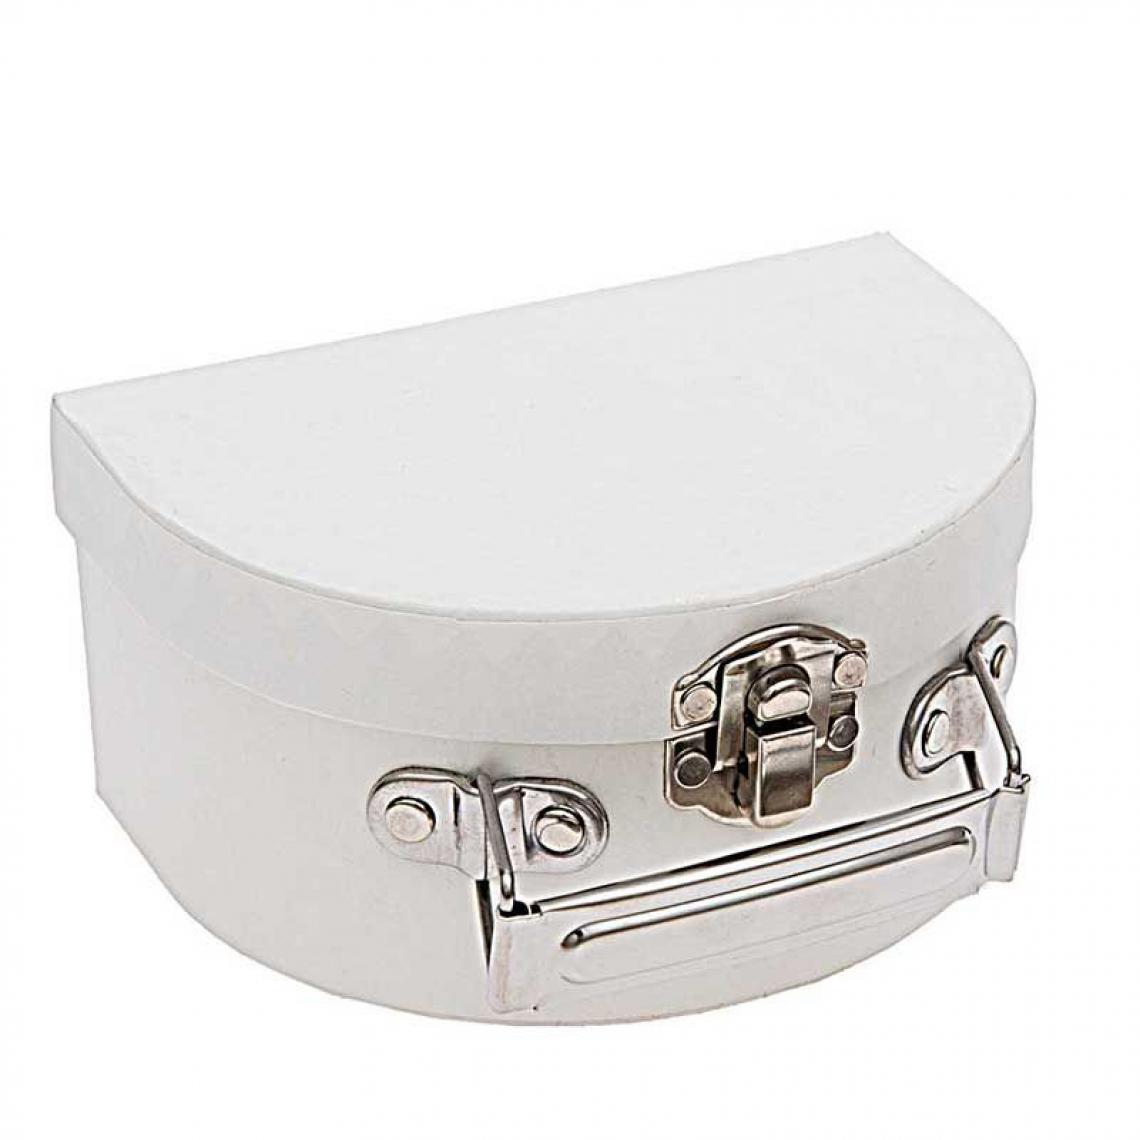 Rico - Petite valise en carton semi-circulaire blanche à décorer - 12 x 9 x 6 cm - Objets déco